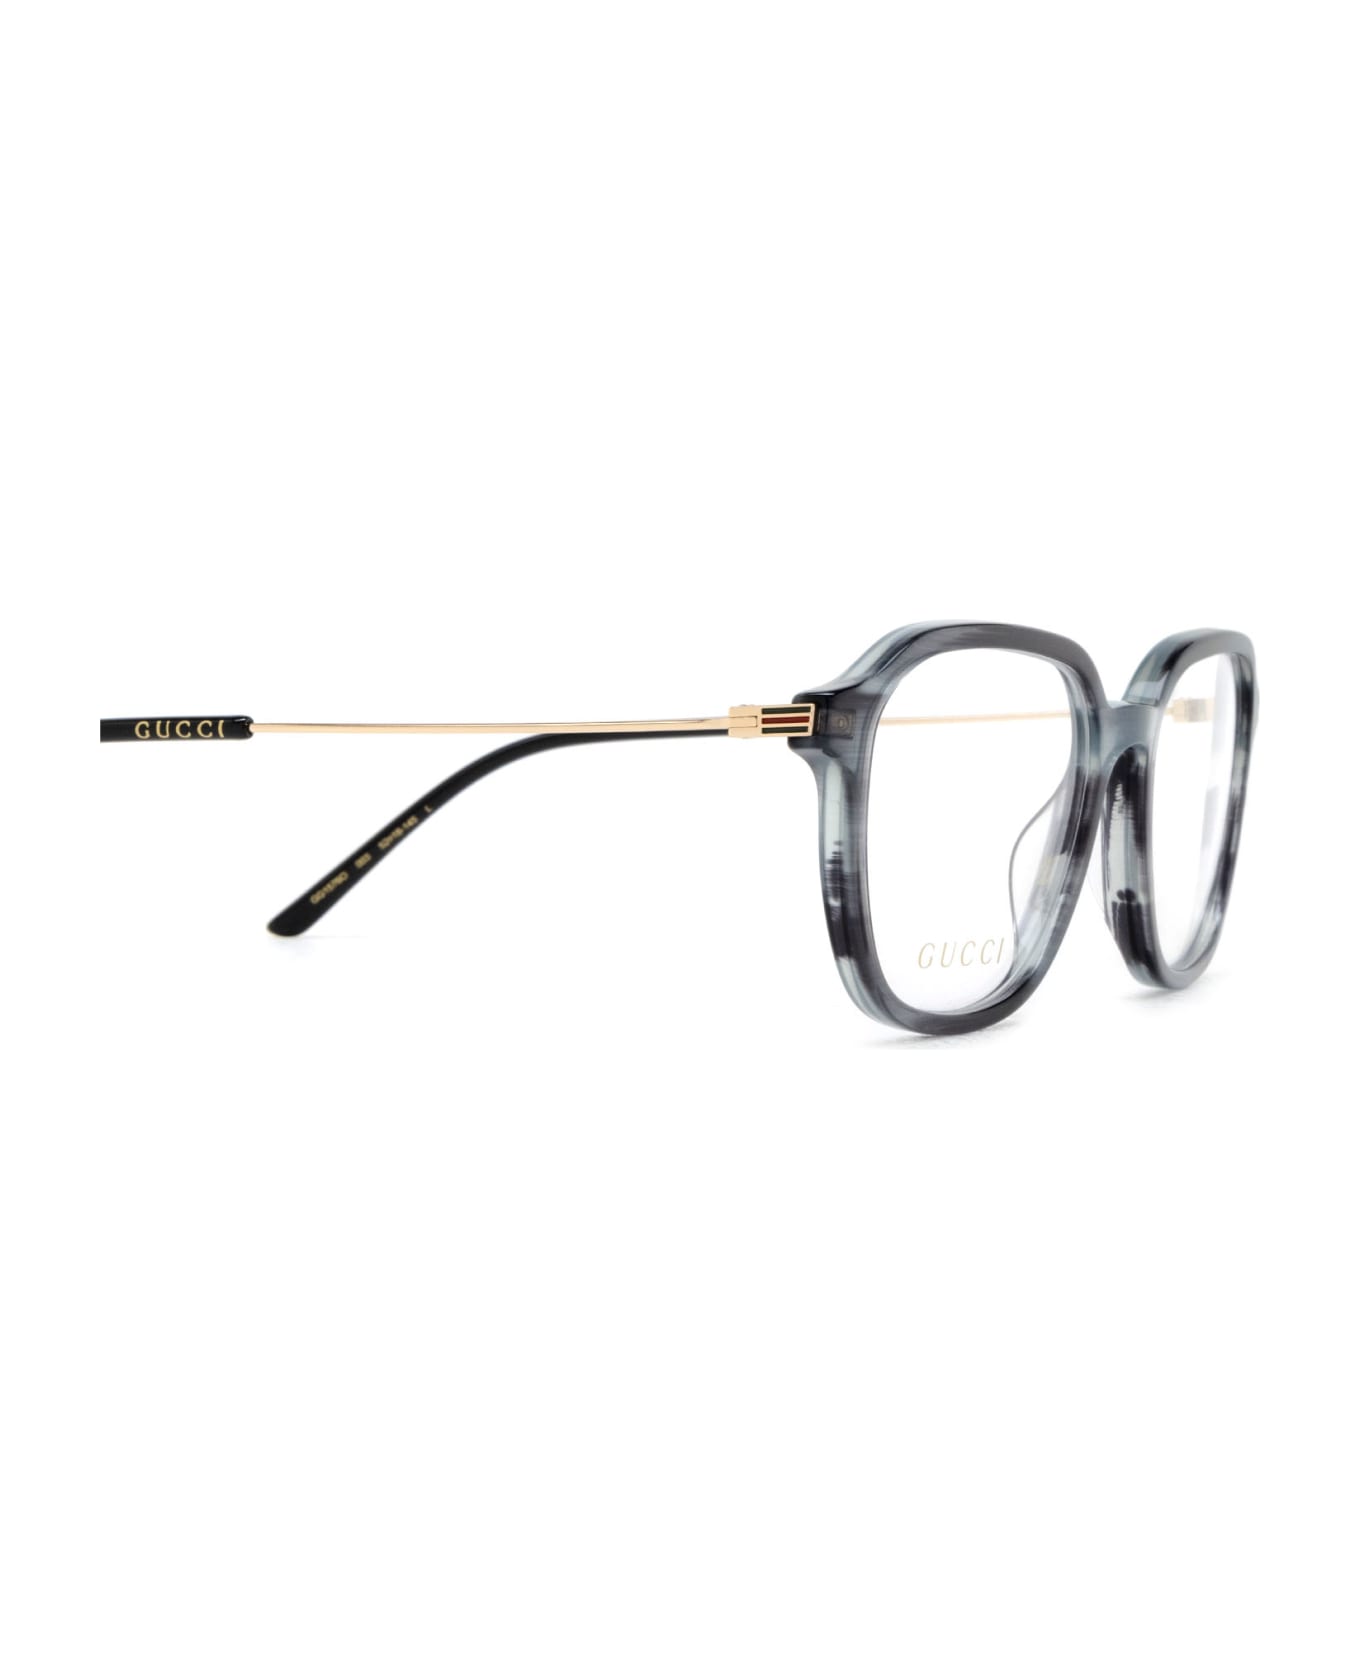 Gucci Eyewear Gg1576o Grey Glasses - Grey